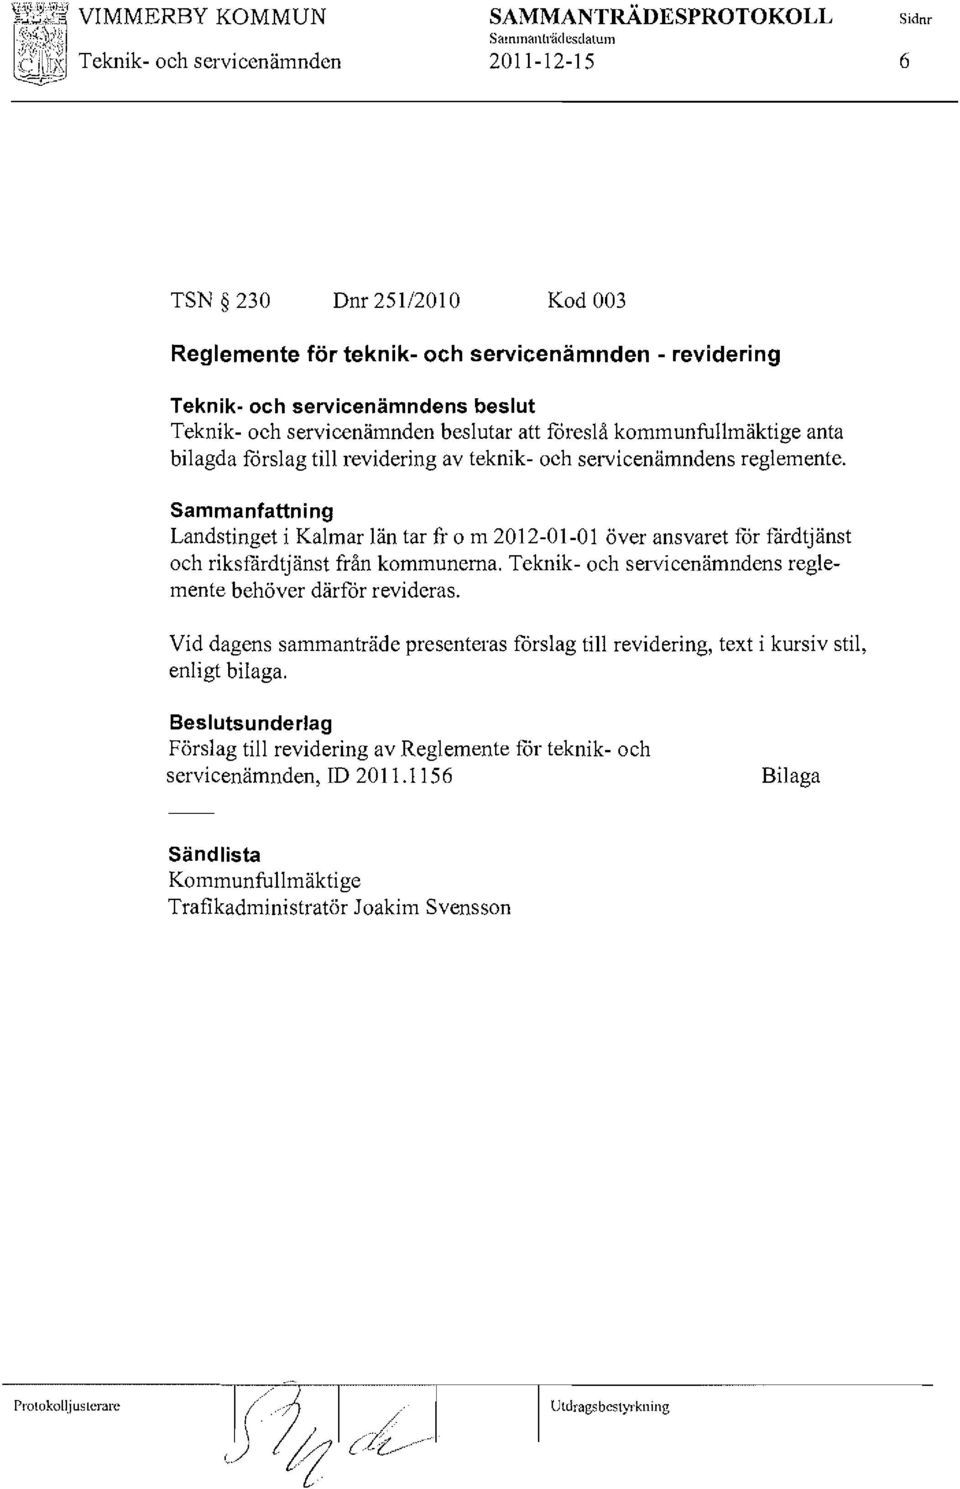 Sammanfattning Landstinget i Kalmar län tar fr o m 2012-01-01 över ansvaret for fårdtjänst och riksfårdtjänst från kommunerna. Teknik- och servicenämndens reglemente behöver därfor revideras.